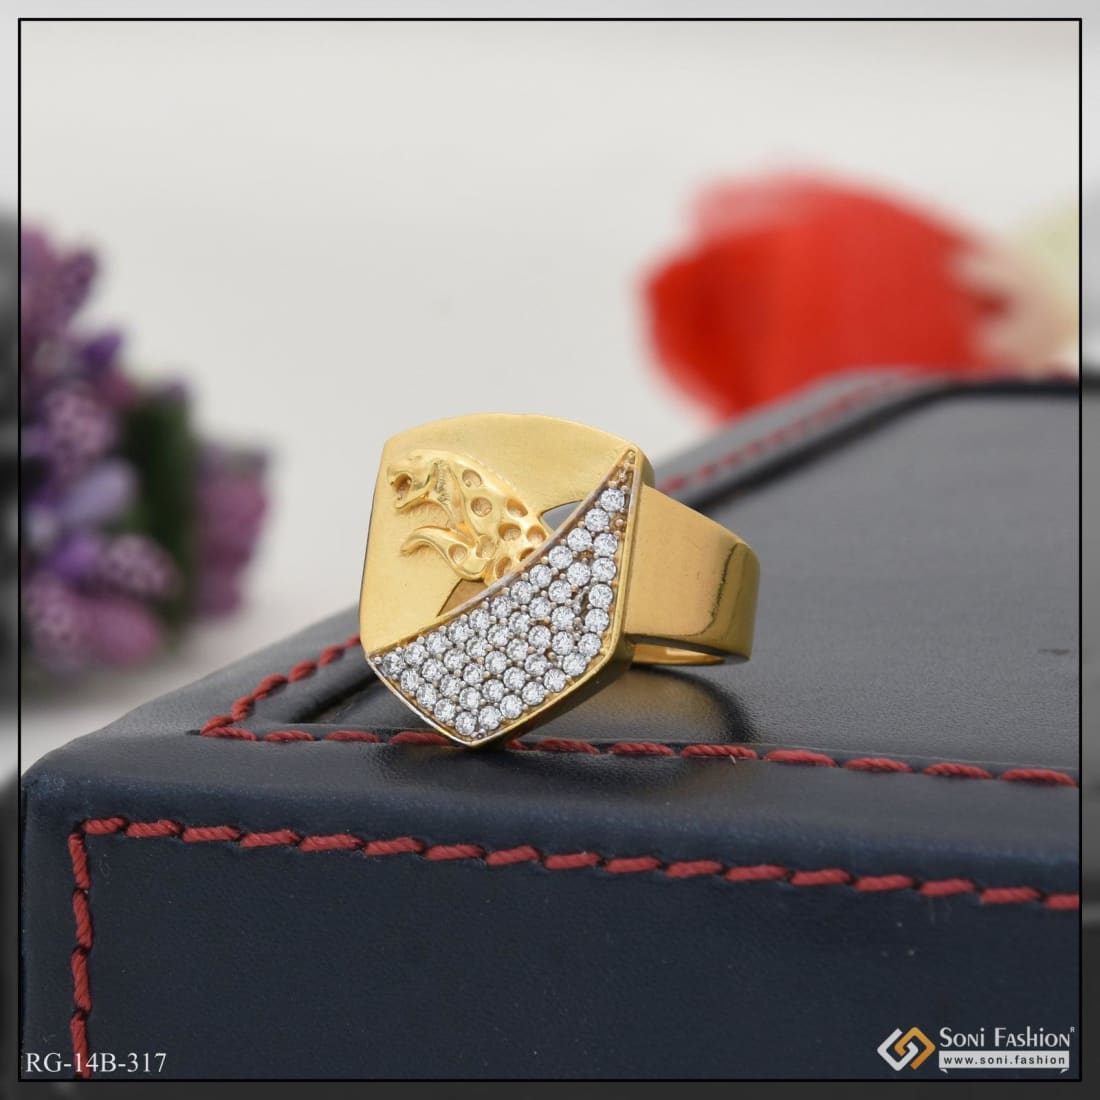 Buy quality Gold 22k Jaguar Design Gents Ring in Ahmedabad